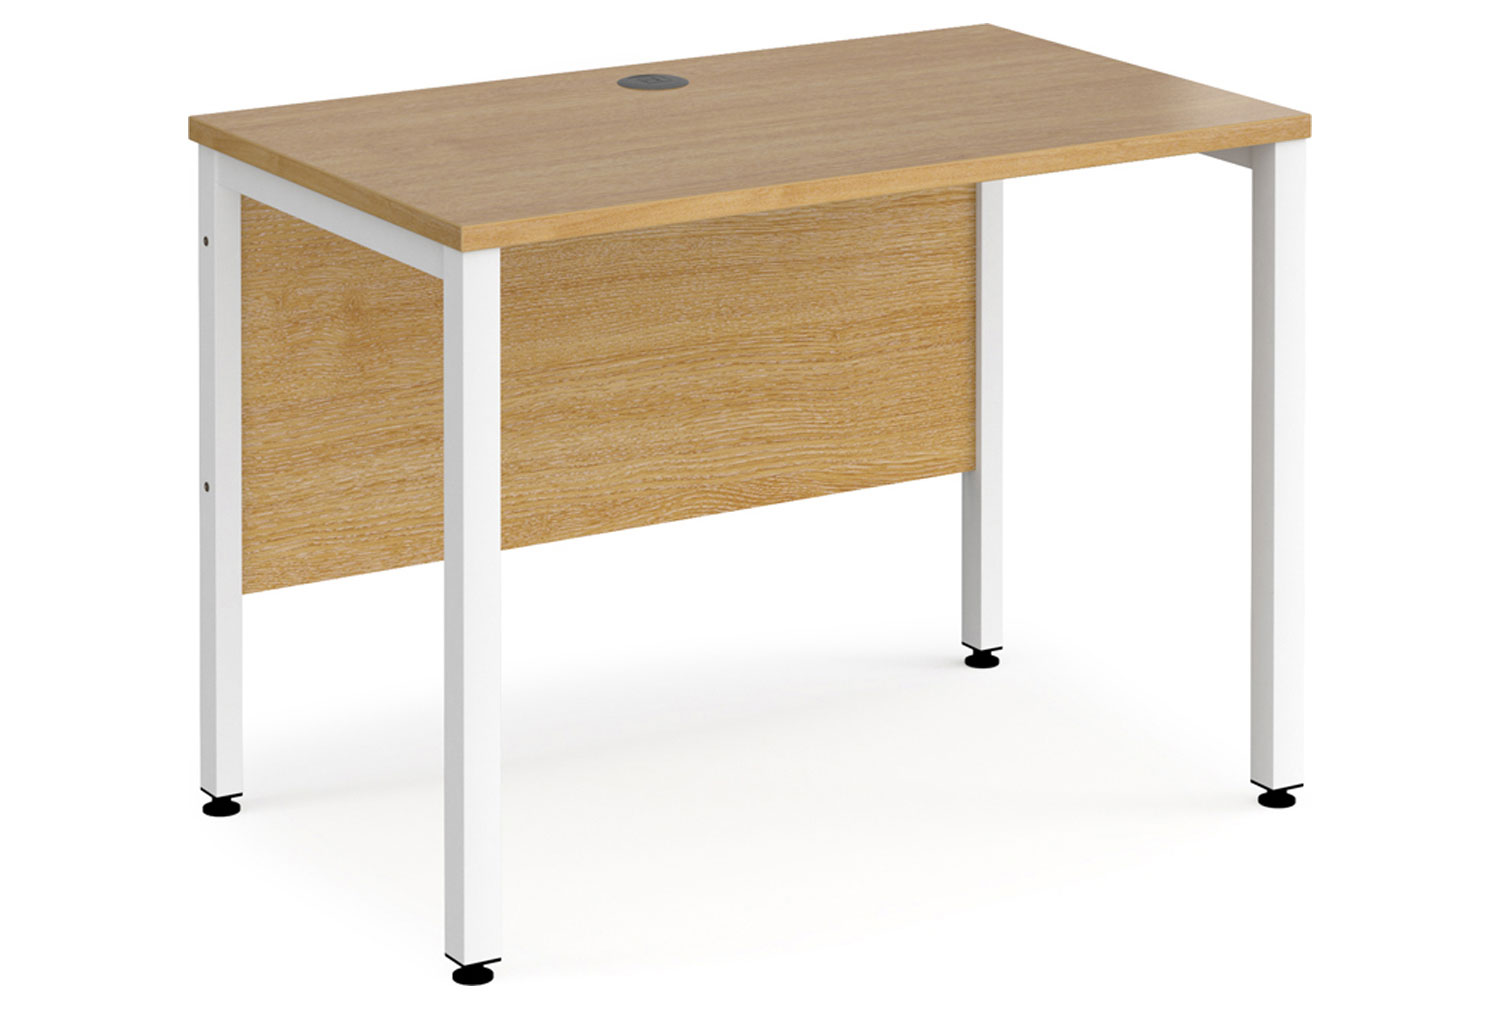 Value Line Deluxe Bench Narrow Rectangular Office Desks (White Legs), 100wx60dx73h (cm), Oak